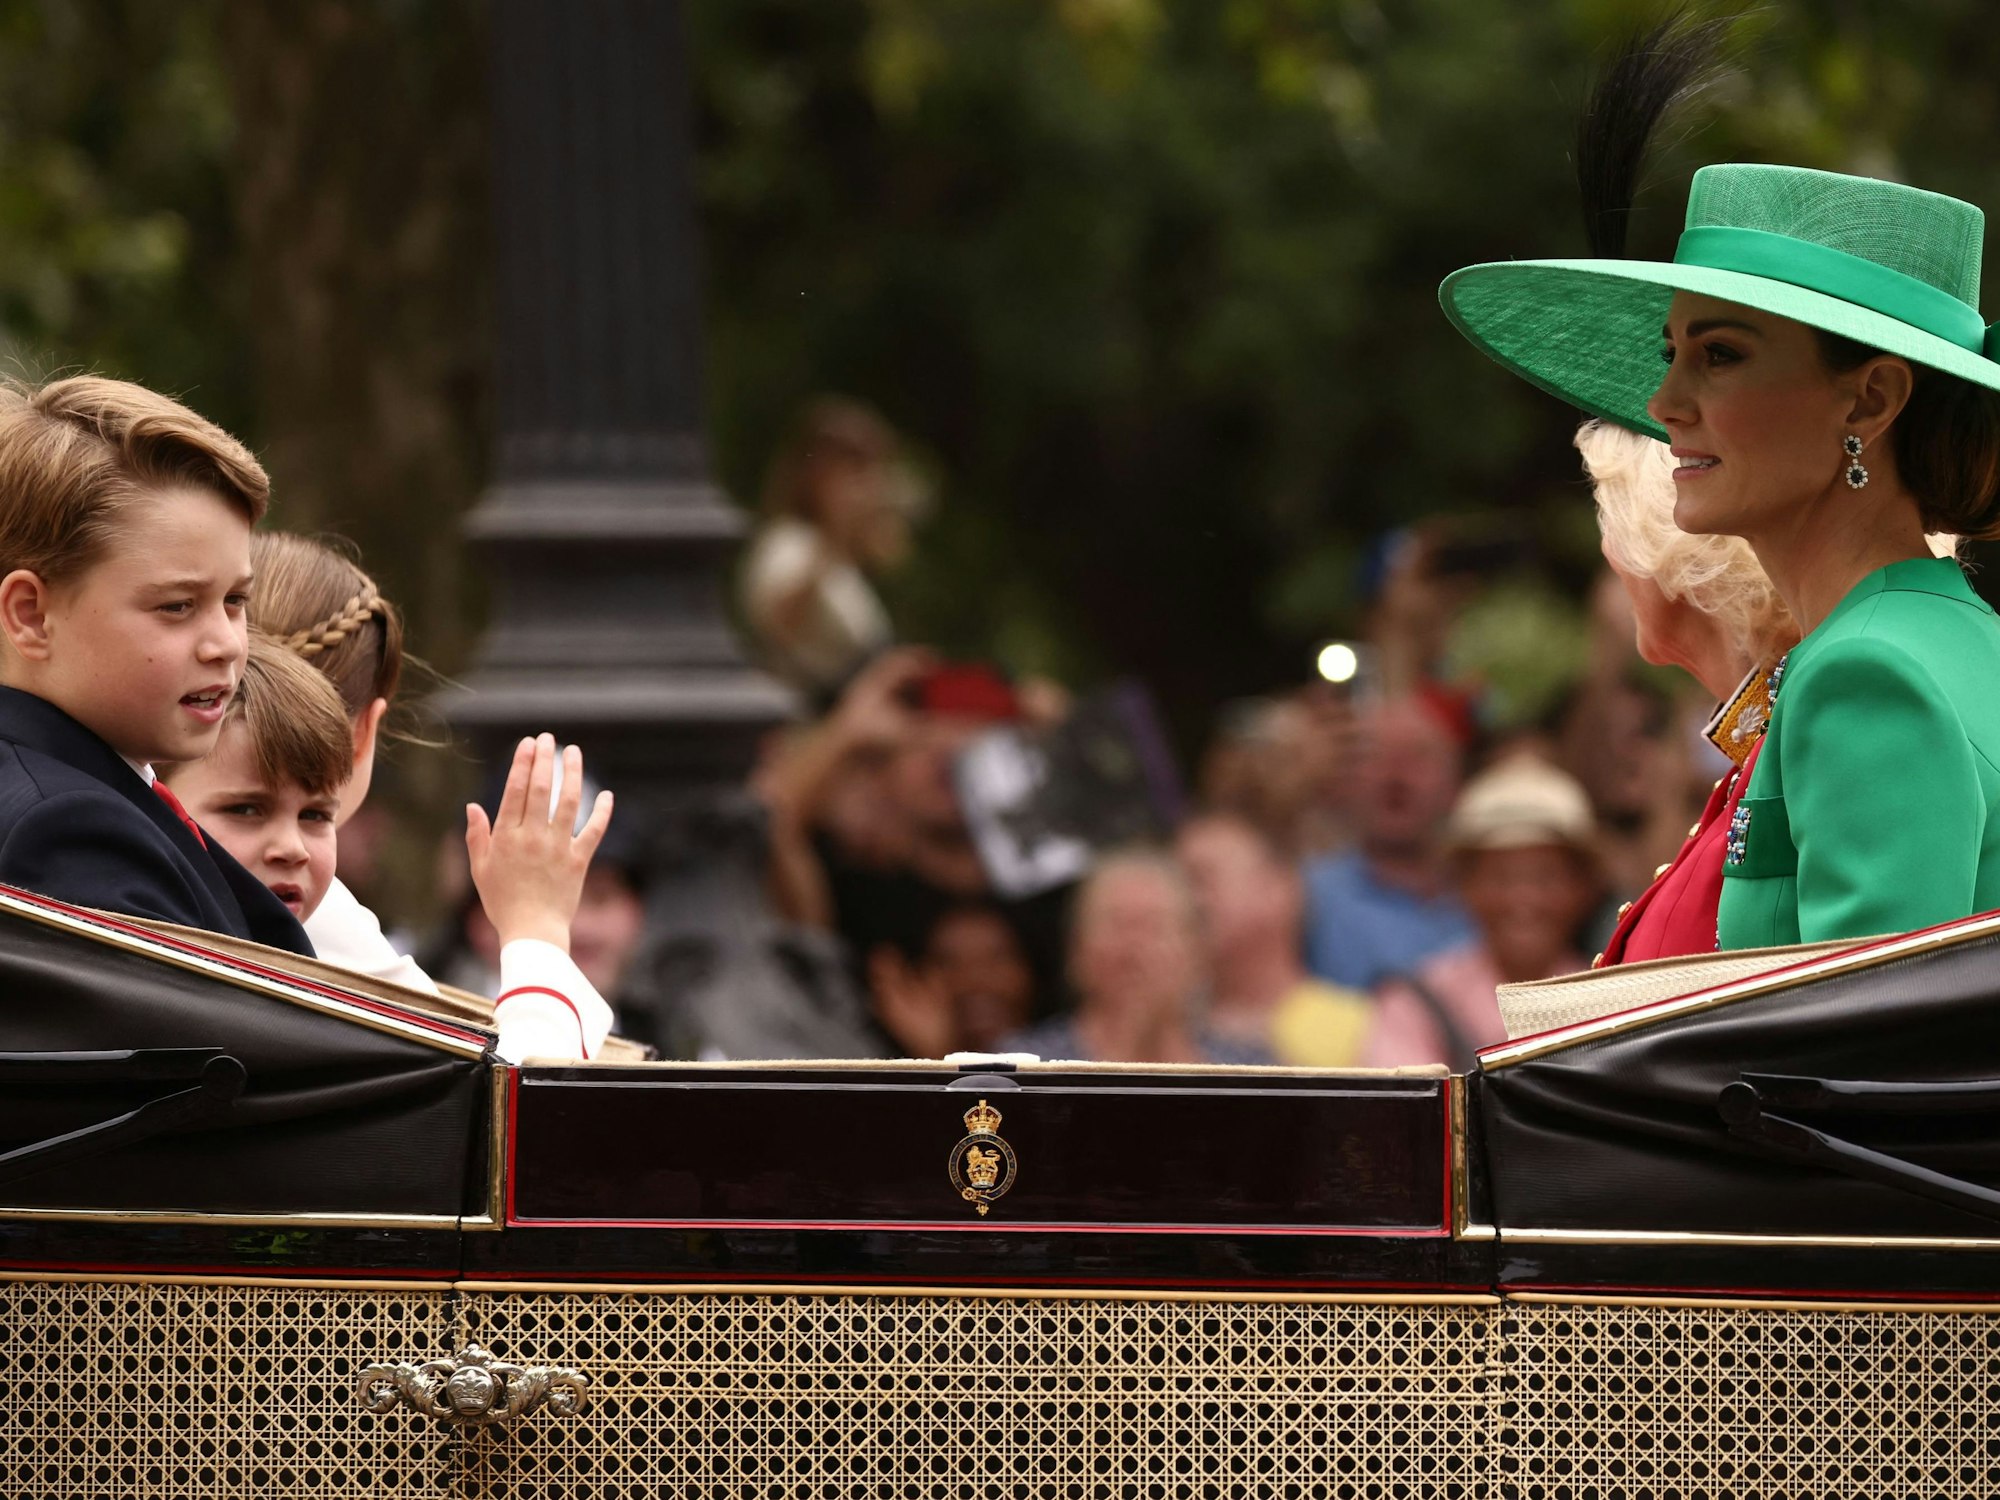 Die britische Königin Camilla (2r), die britische Prinzessin Catherine von Wales (r) und ihre Kinder, Prinz George von Wales (l), Prinz Louis von Wales (2l) und Prinzessin Charlotte von Wales (3l) in einer Kutsche zur Horse Guards Parade für die Geburtstagsparade des Königs.